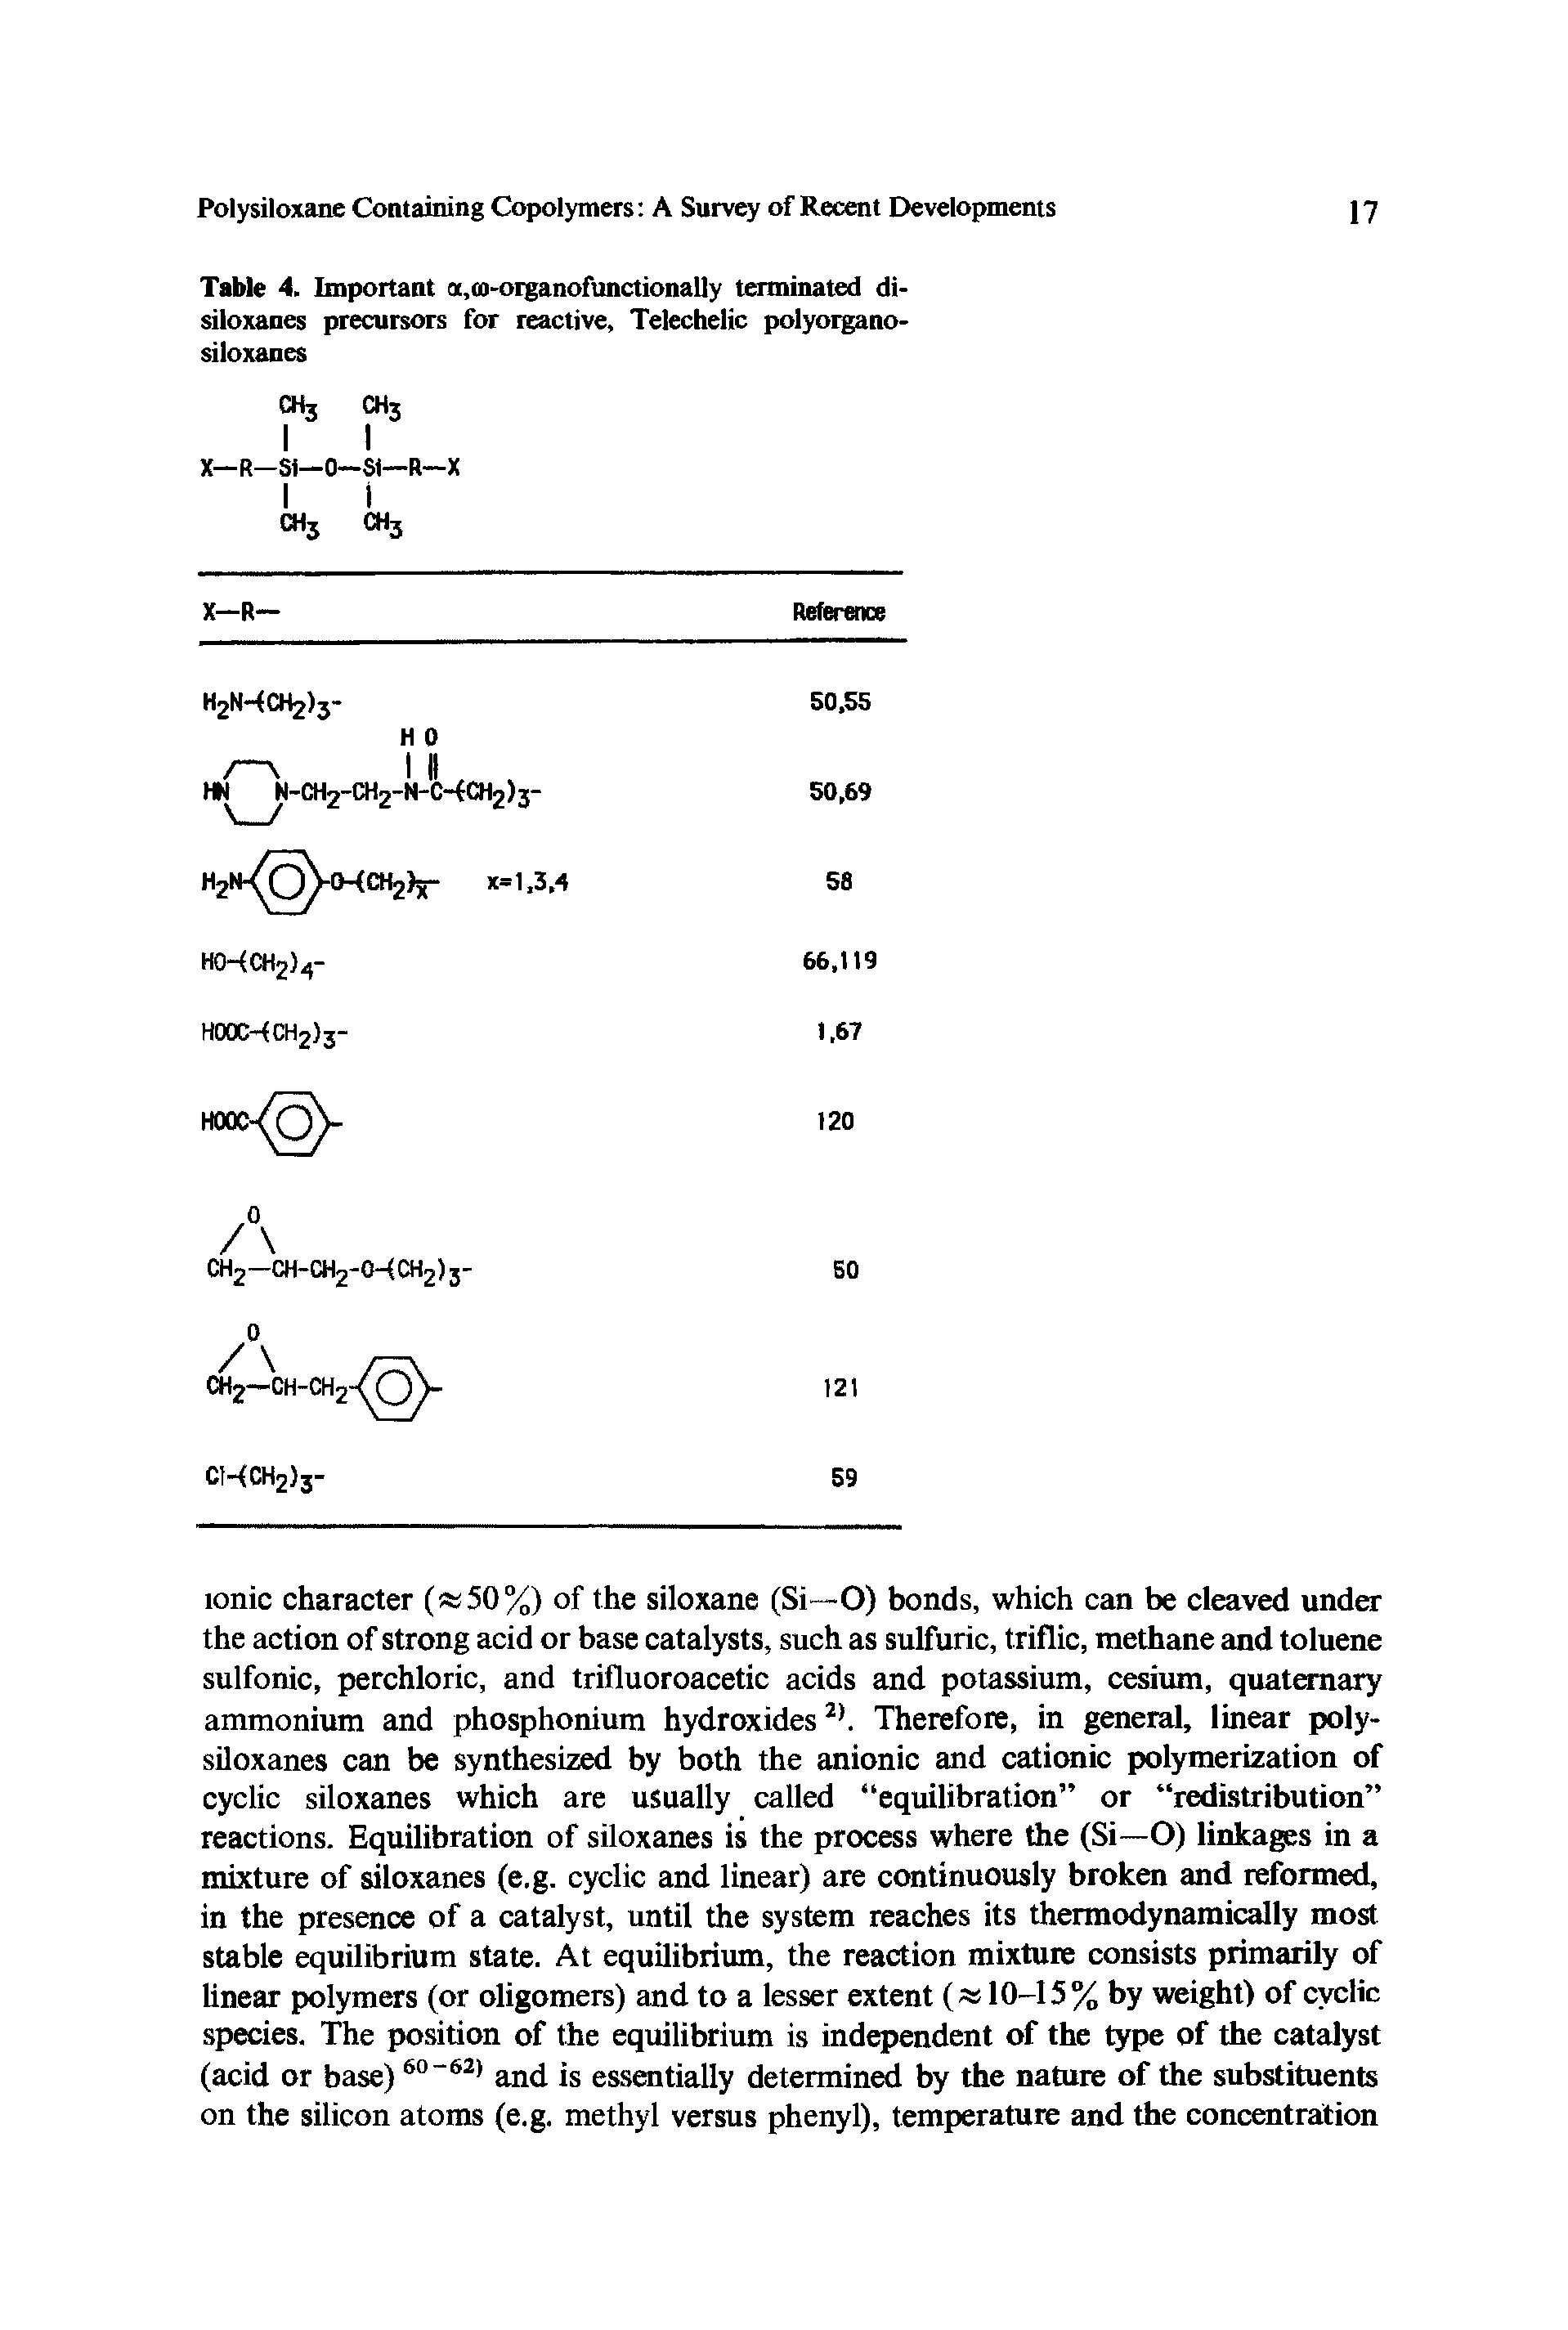 Table 4. Important a,oj-organofunctionally terminated di-siloxanes precursors for reactive, Telechelic polyorgano-siloxanes...